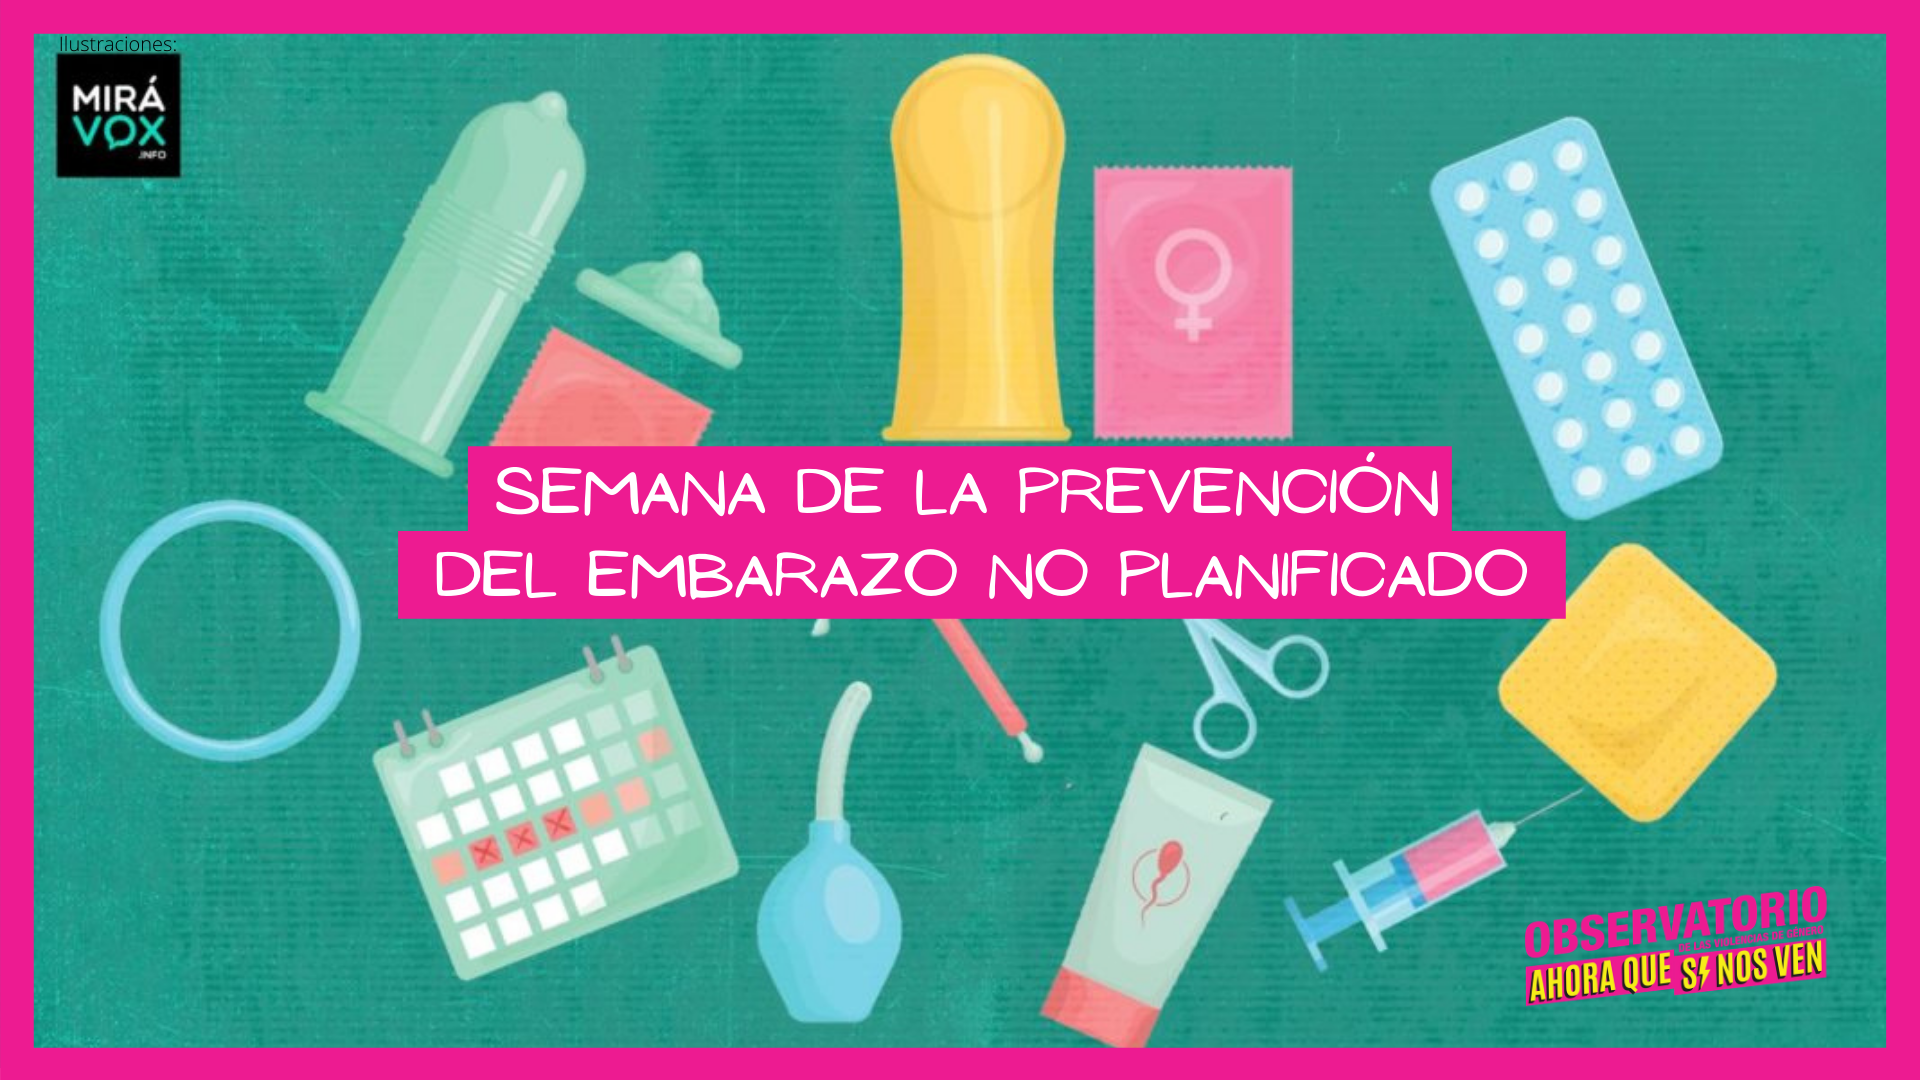 Metodos anticonceptivos como preservativo, pastillas anticonceptivas,etc